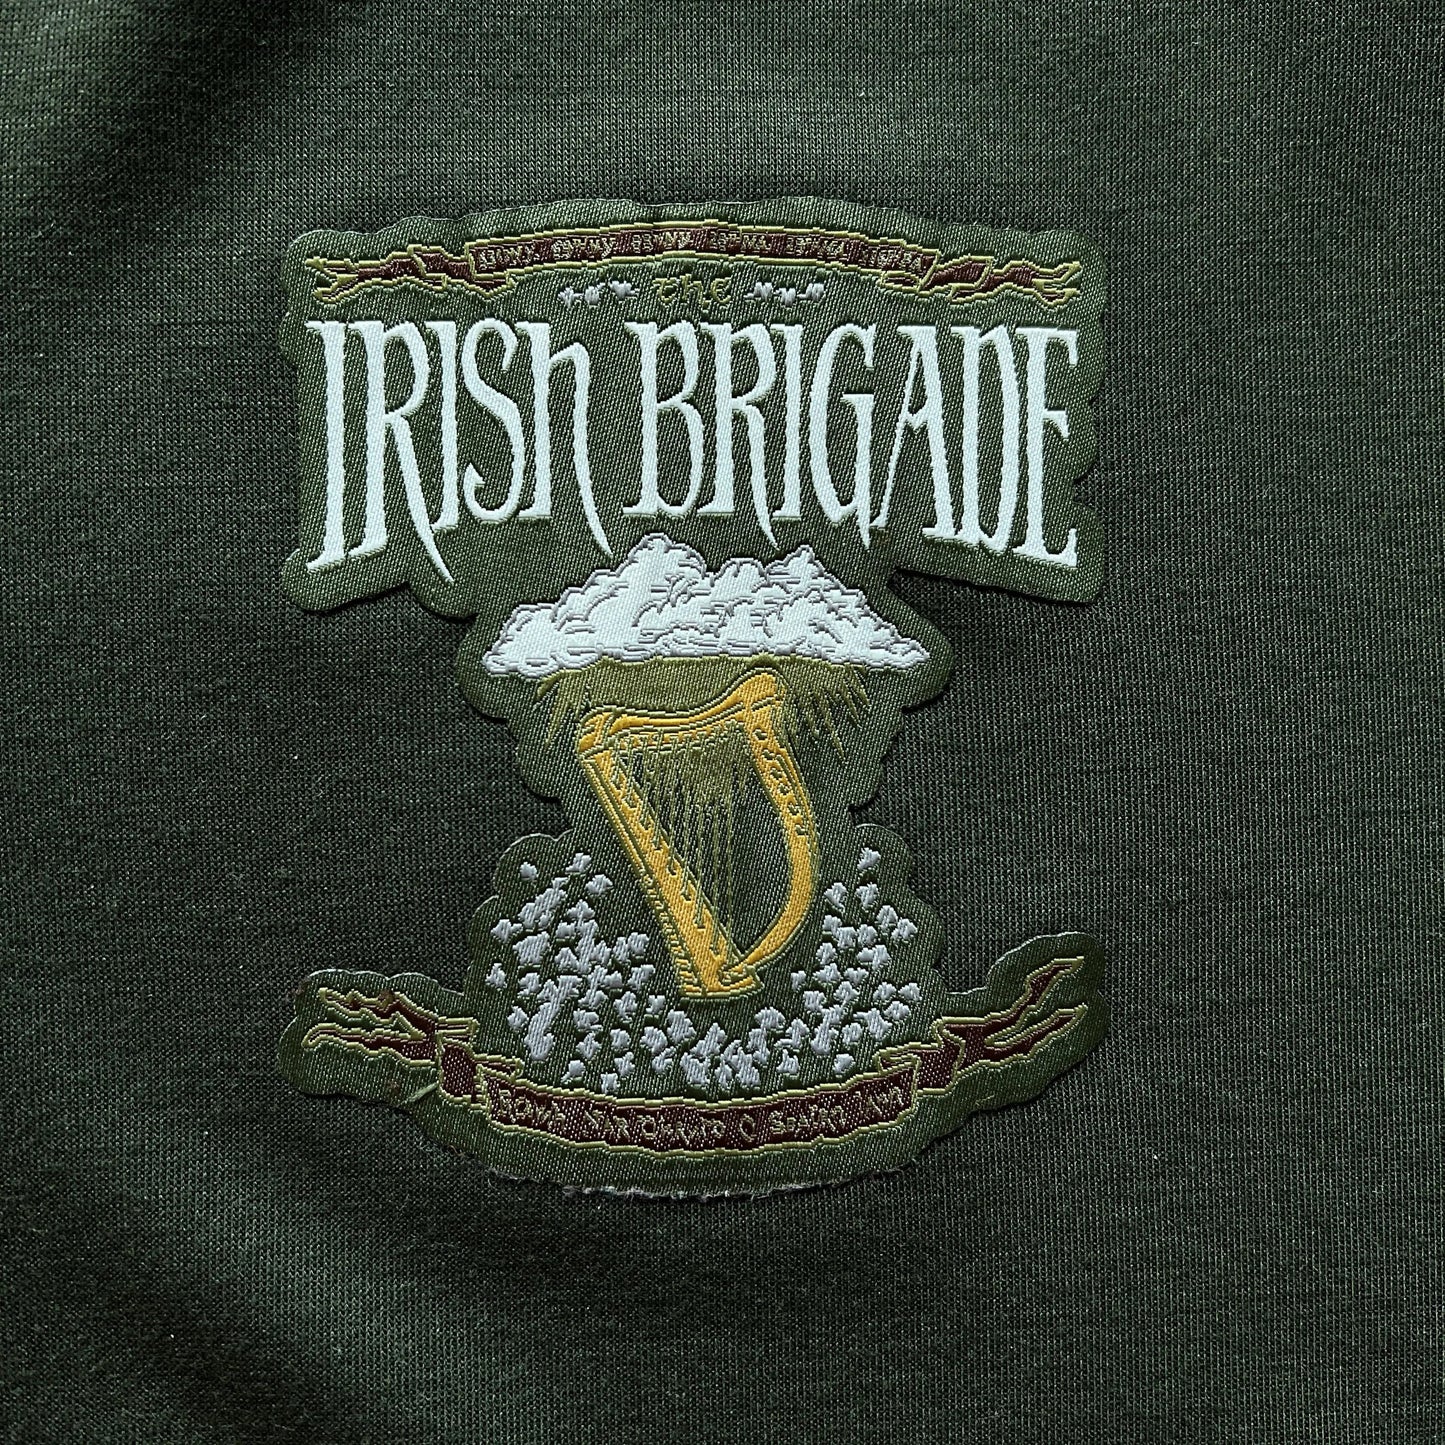 The Civil War "Irish Brigade" Jacket